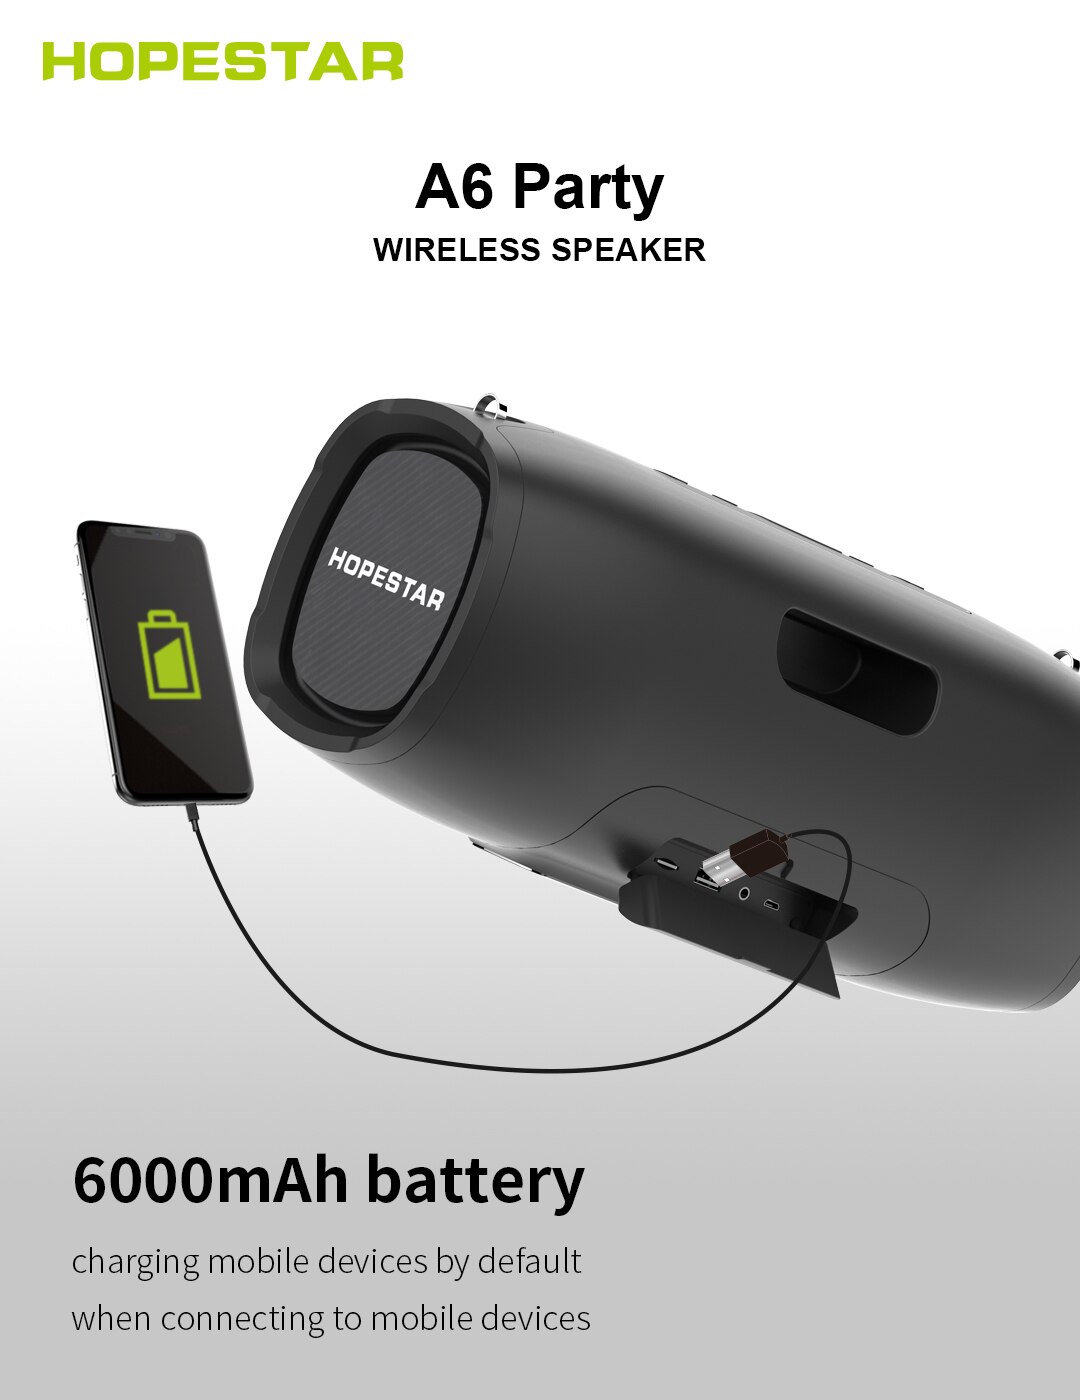 Loa bluetooth di động Hopestar A6 Party - Loa siêu bass, màng rung cộng hưởng - Công suất 40W, chống nước chuẩn IPX6 - Tính năng TWS (True Wireless Stereo) - Đầy đủ kết nối Bluetooth, AUX, USB - Đèn led sống động - Giao màu ngẫu nhiên - Hàng nhập khẩu